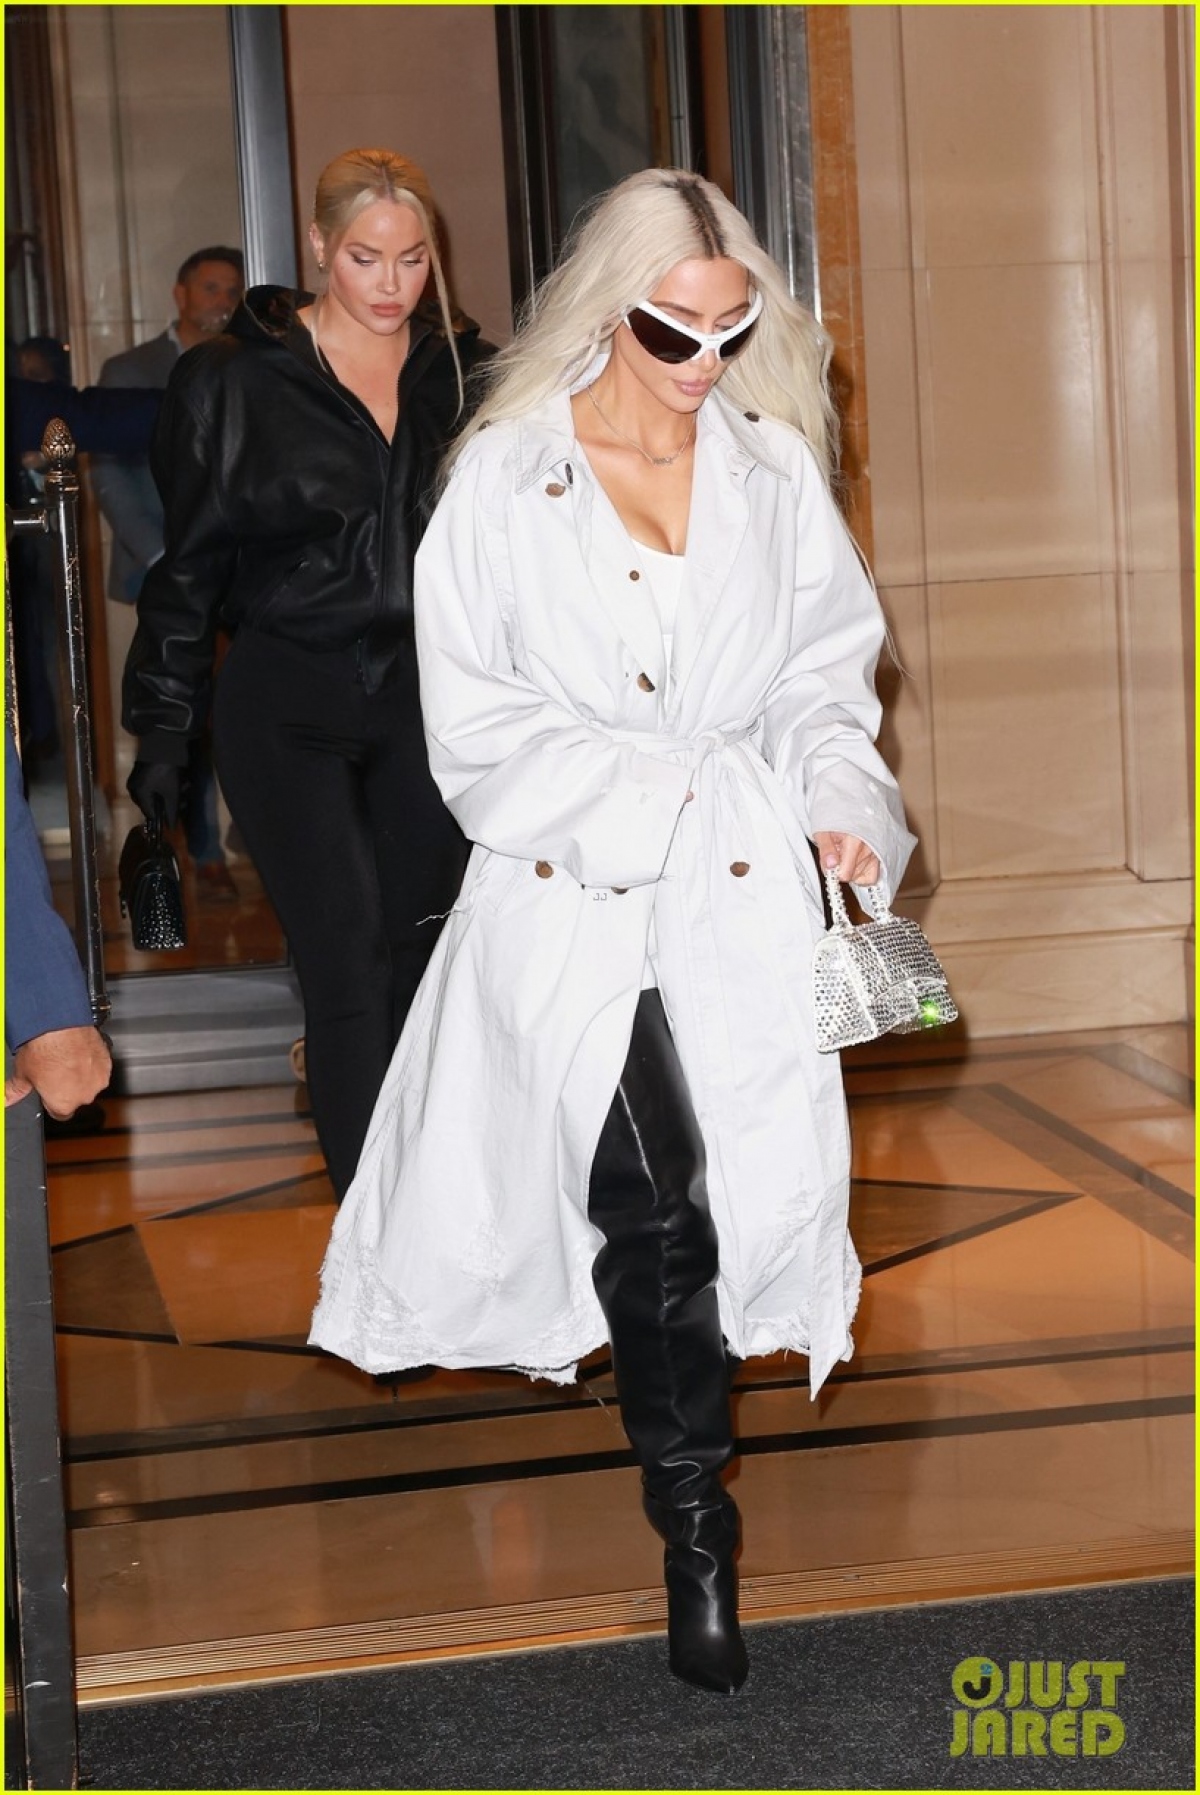 Kim Kardashian nhuộm tóc bạch kim, lên đồ sành điệu đi ăn tối cùng bạn bè - Ảnh 1.